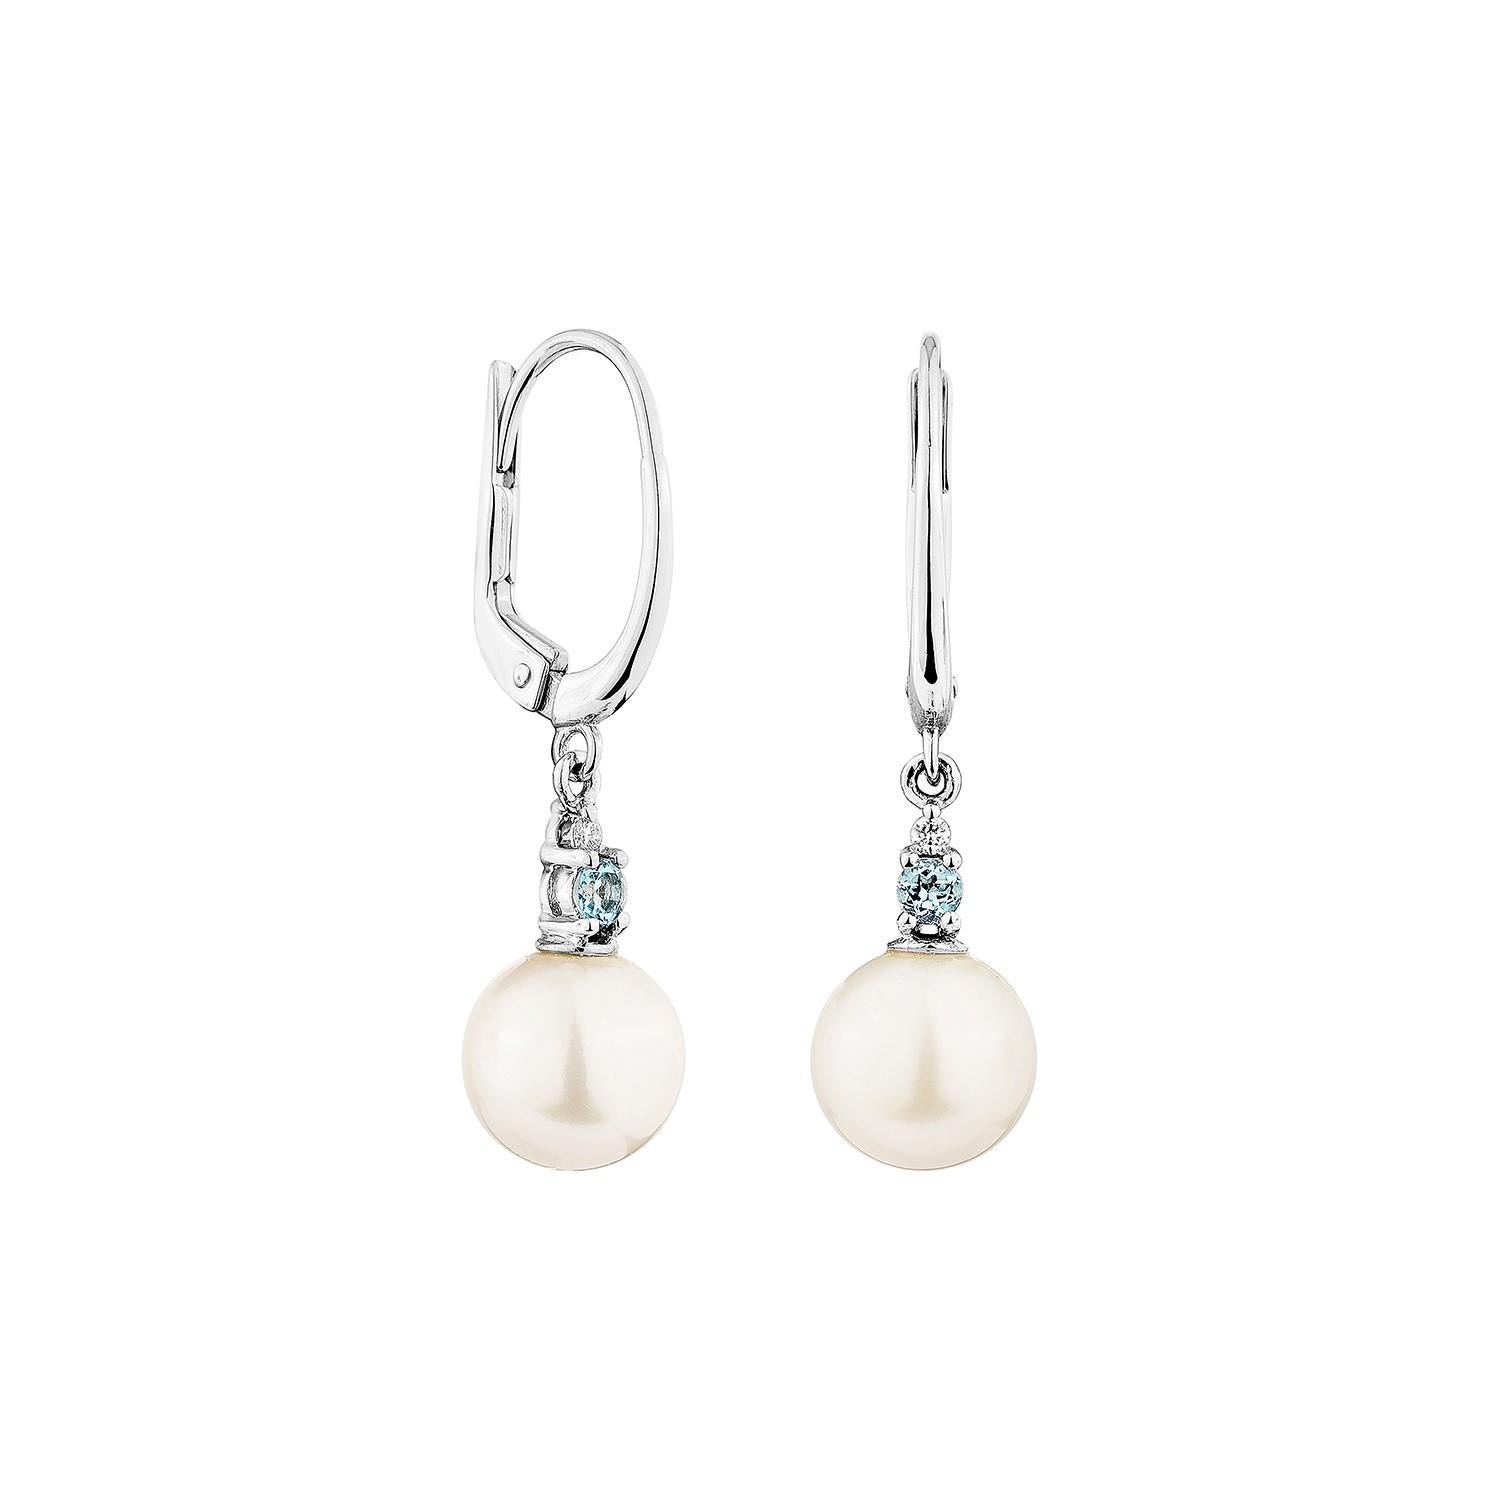 Présenté Une jolie boucle d'oreille fantaisie en perle blanche et topaze bleue suisse est parfaite pour les personnes qui apprécient la qualité et qui souhaitent la porter en toute occasion ou lors d'une célébration. Les boucles d'oreilles en or